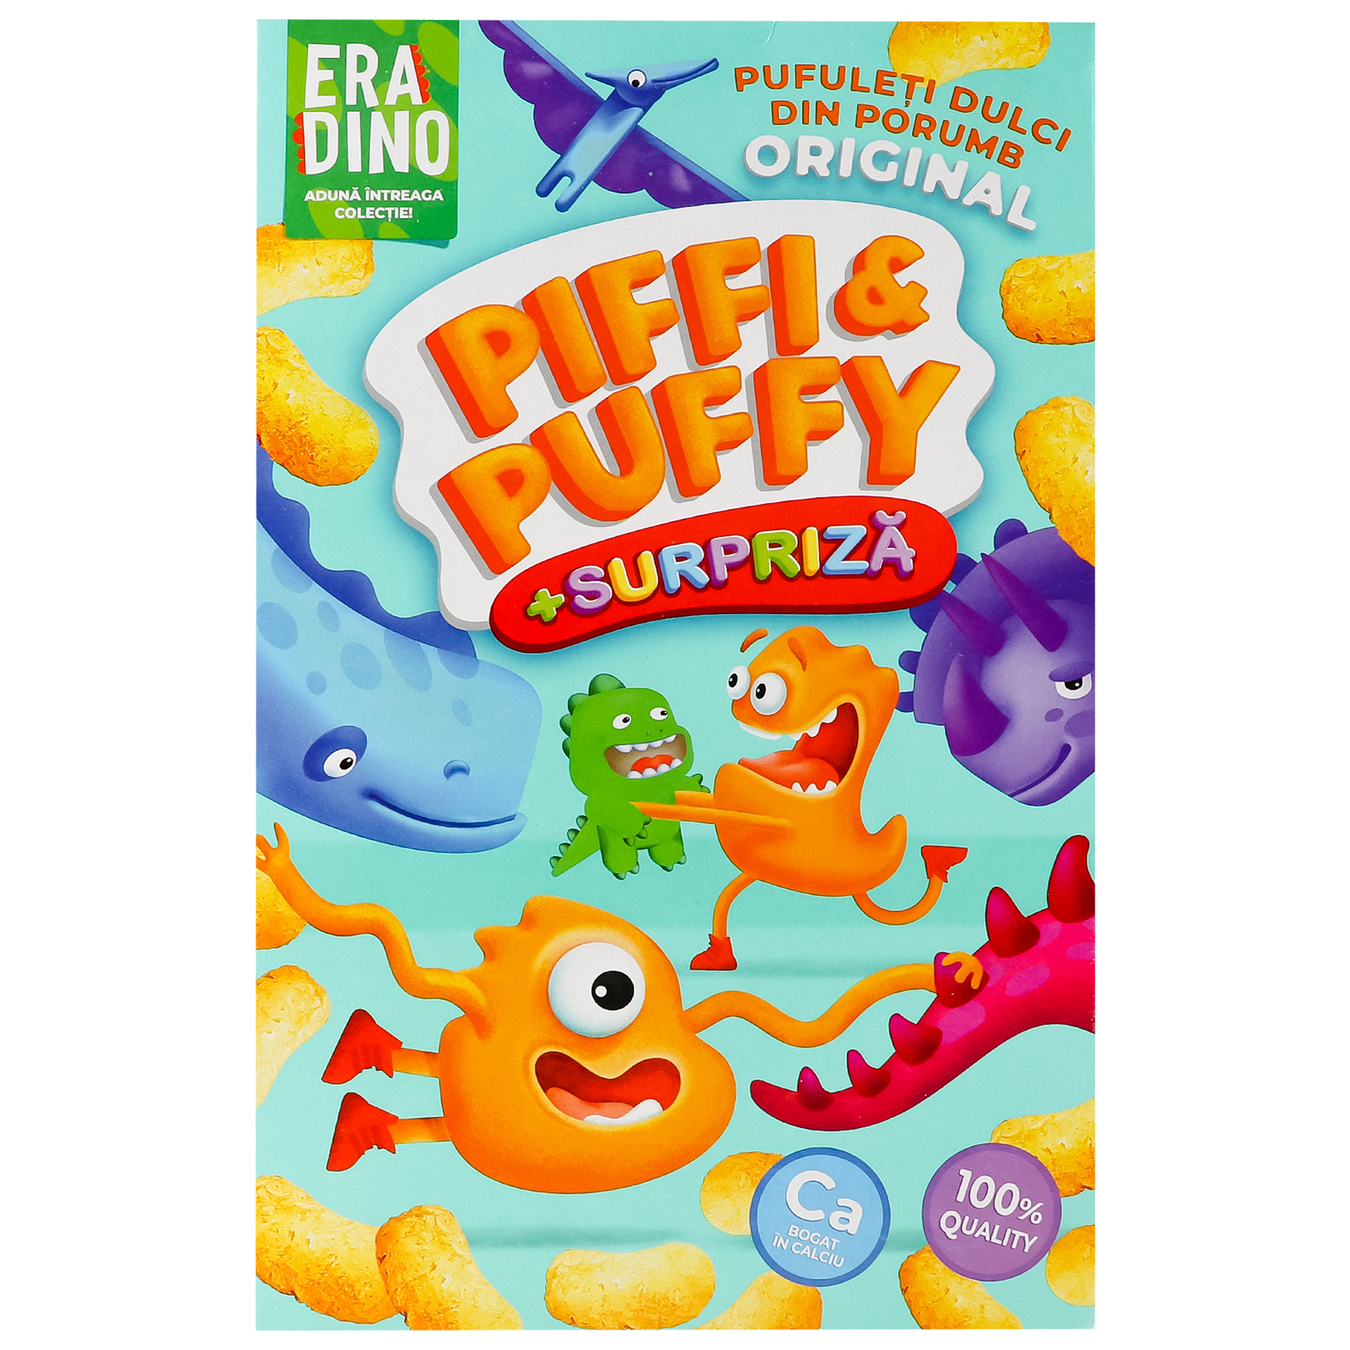 Палочки кукурузные Piffi&Puffy с сюрпризом 90г